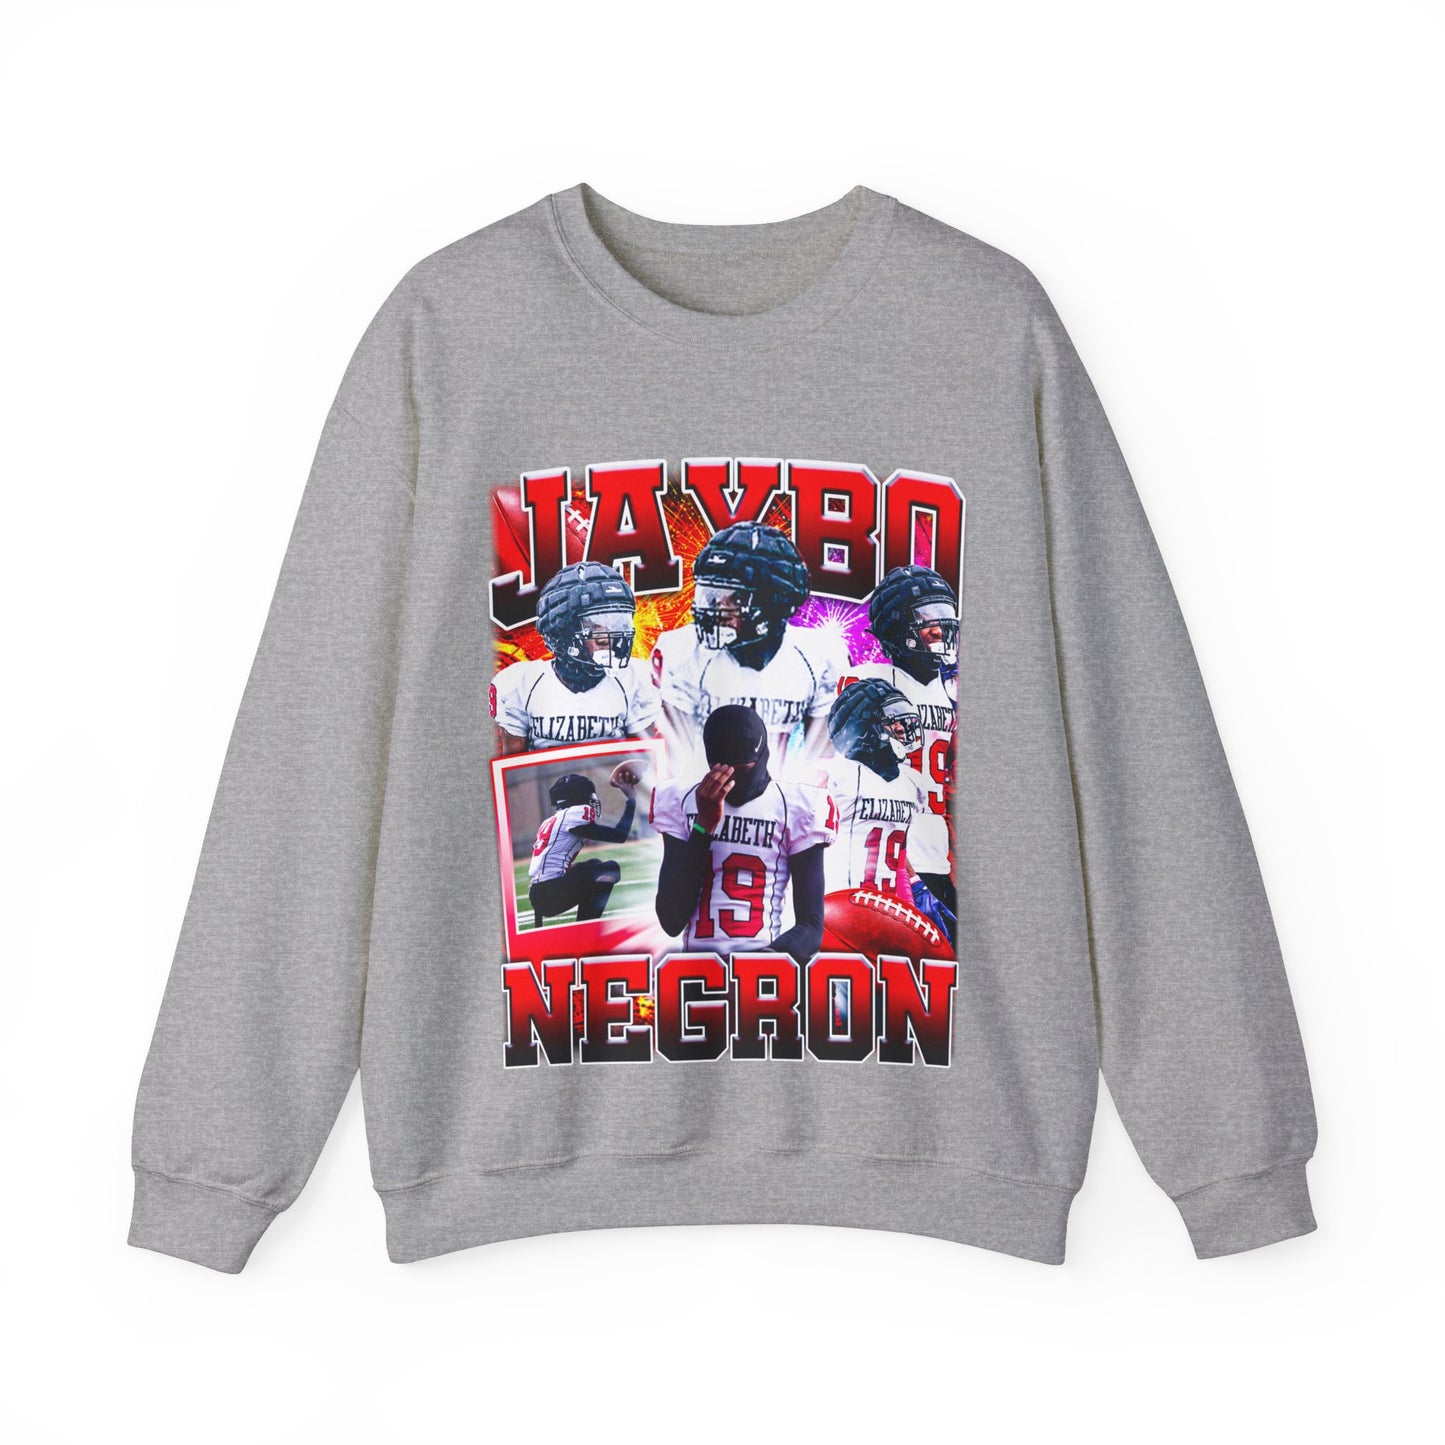 Jaybo Negron Crewneck Sweatshirt